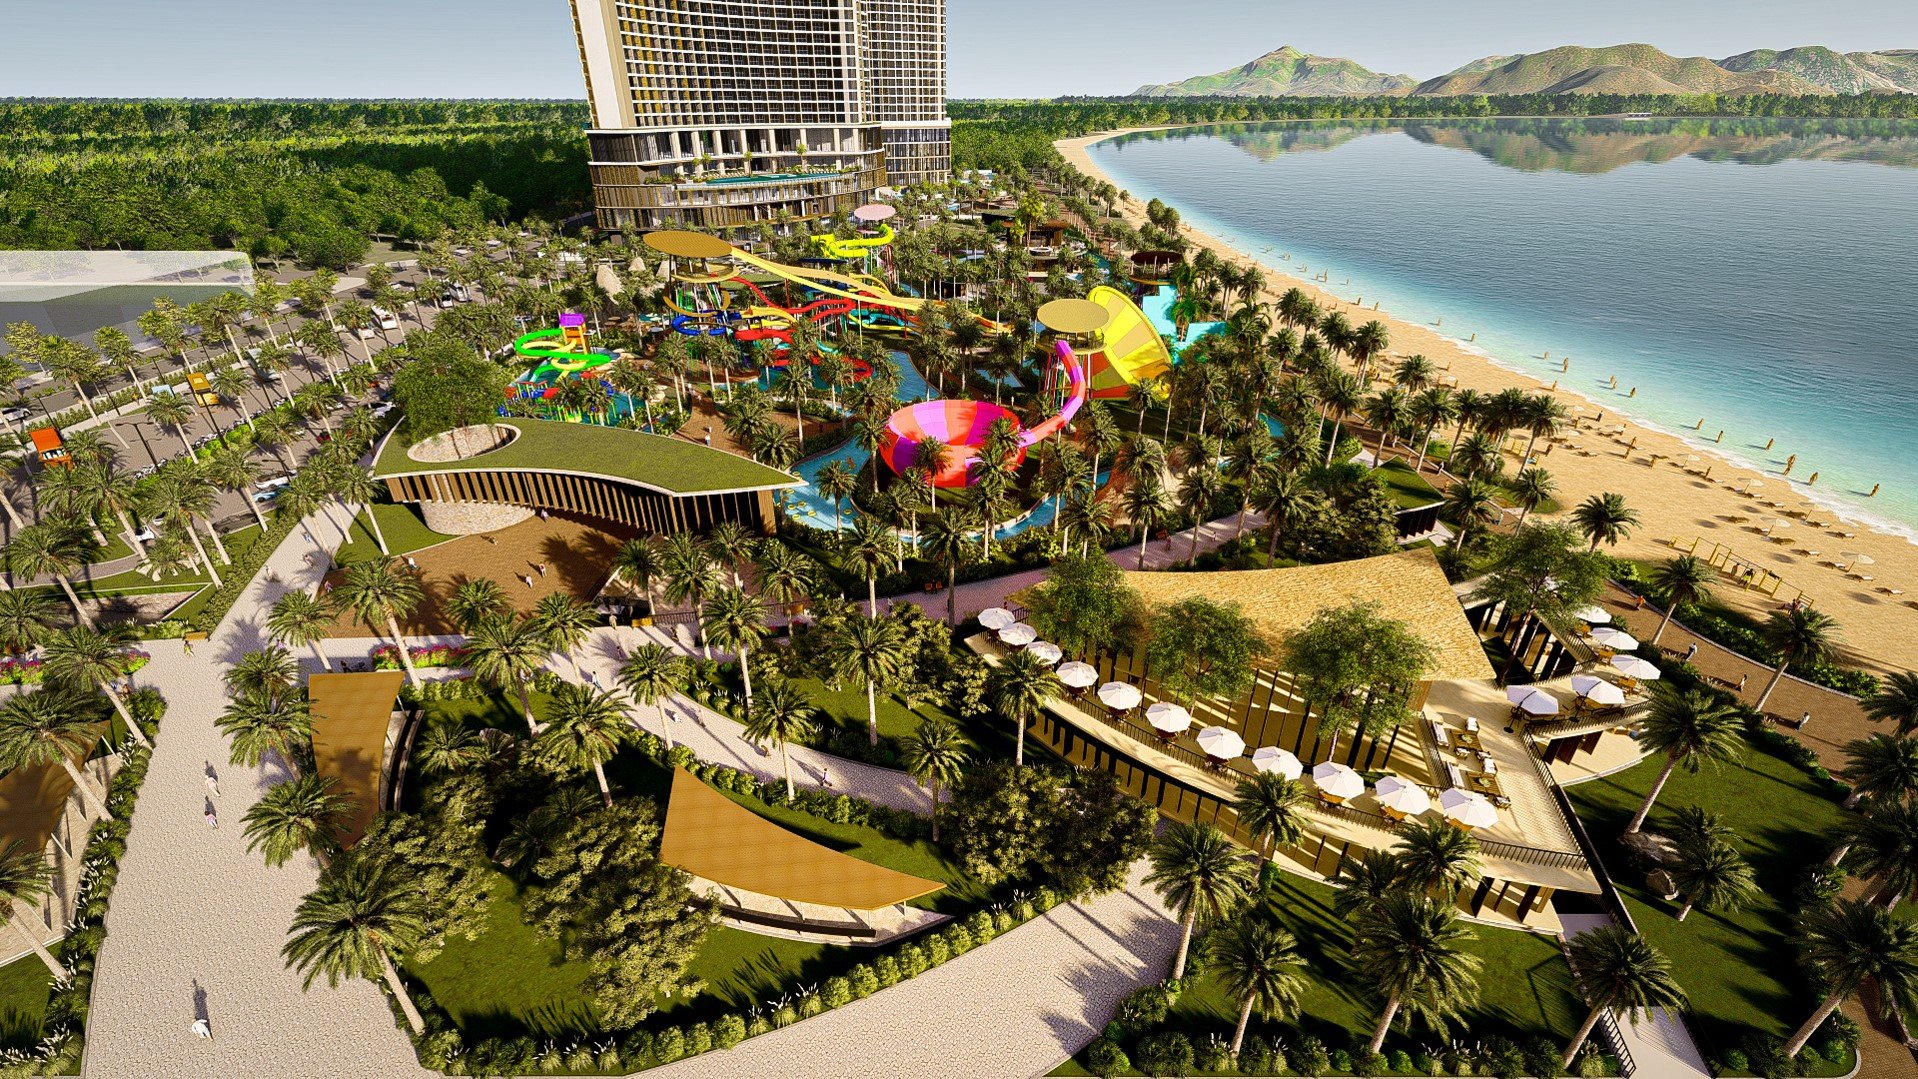 SunBay Park Hotel & Resort Phan Rang tọa lạc ngay trung tâm công viên biển Bình Sơn, TP. Phan Rang - Tháp Chàm (Ninh Thuận).